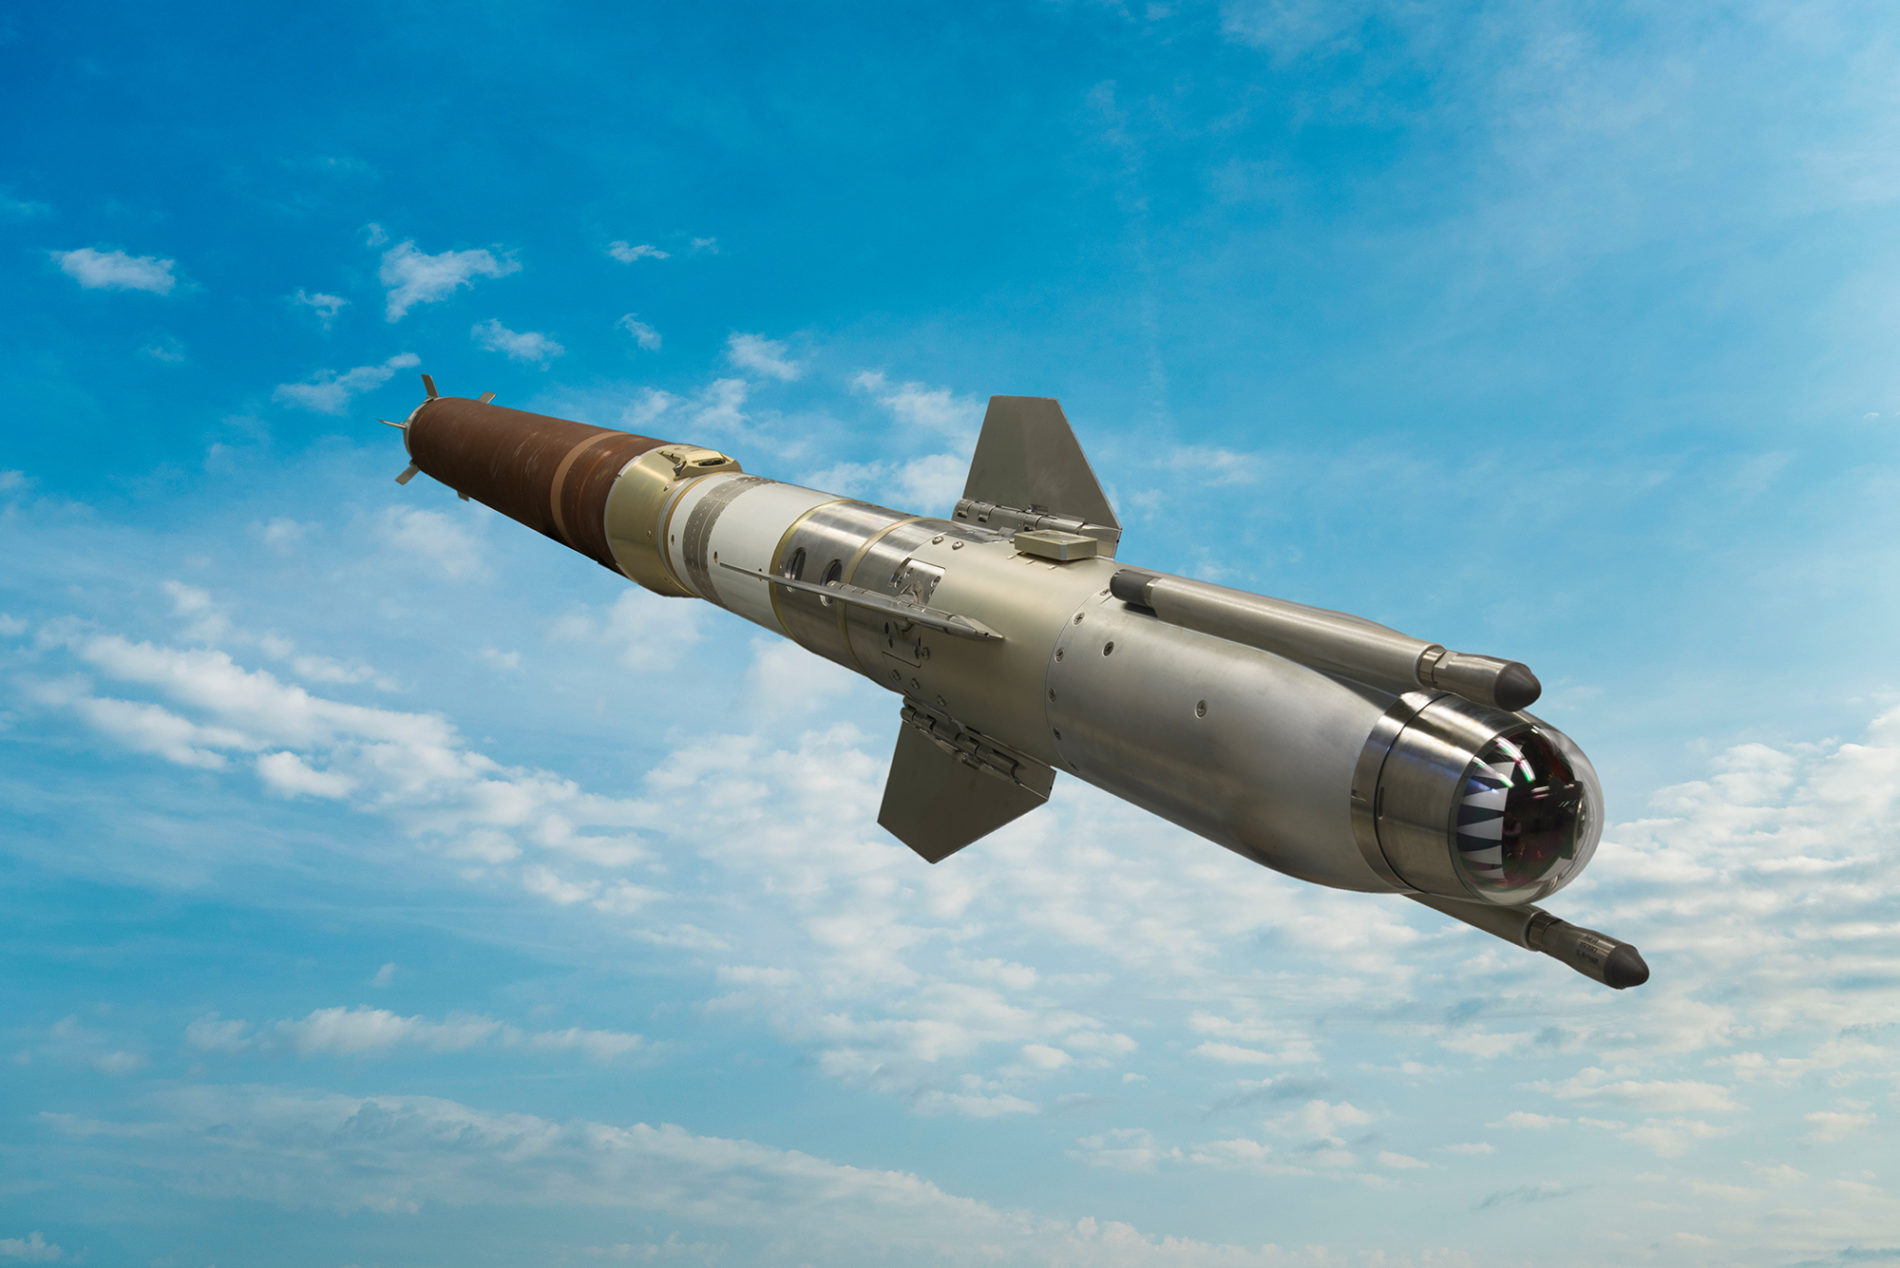 RAM-Block-2-missile-capability-e1583229924605.jpg